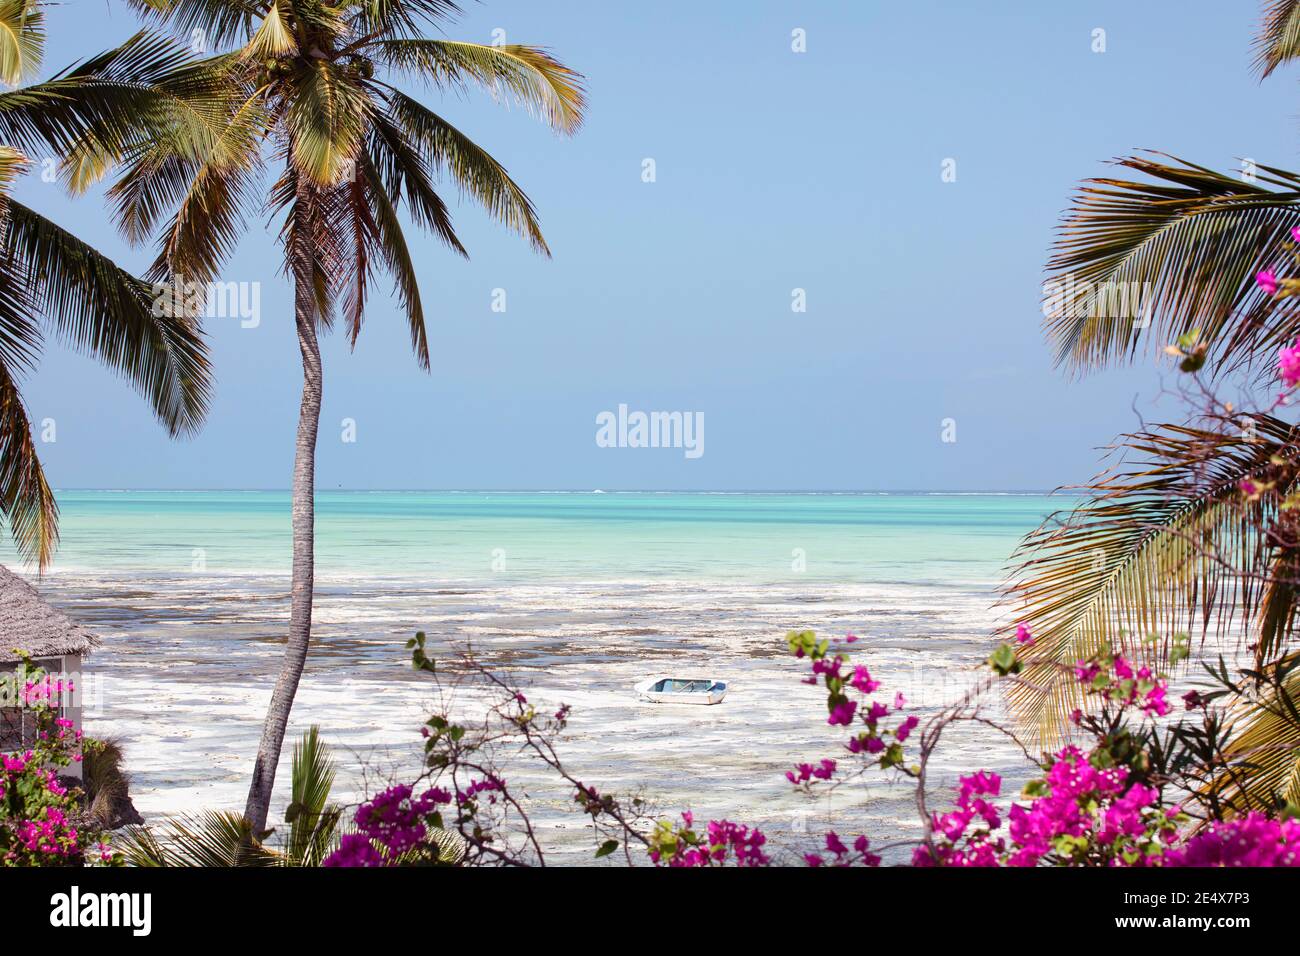 Schöne paradiesische Landschaft der Insel Sansibar. Tropisches Klima, Strand mit türkisfarbenem Meer, Kokospalmen, Blumen und Holzboot. Stockfoto